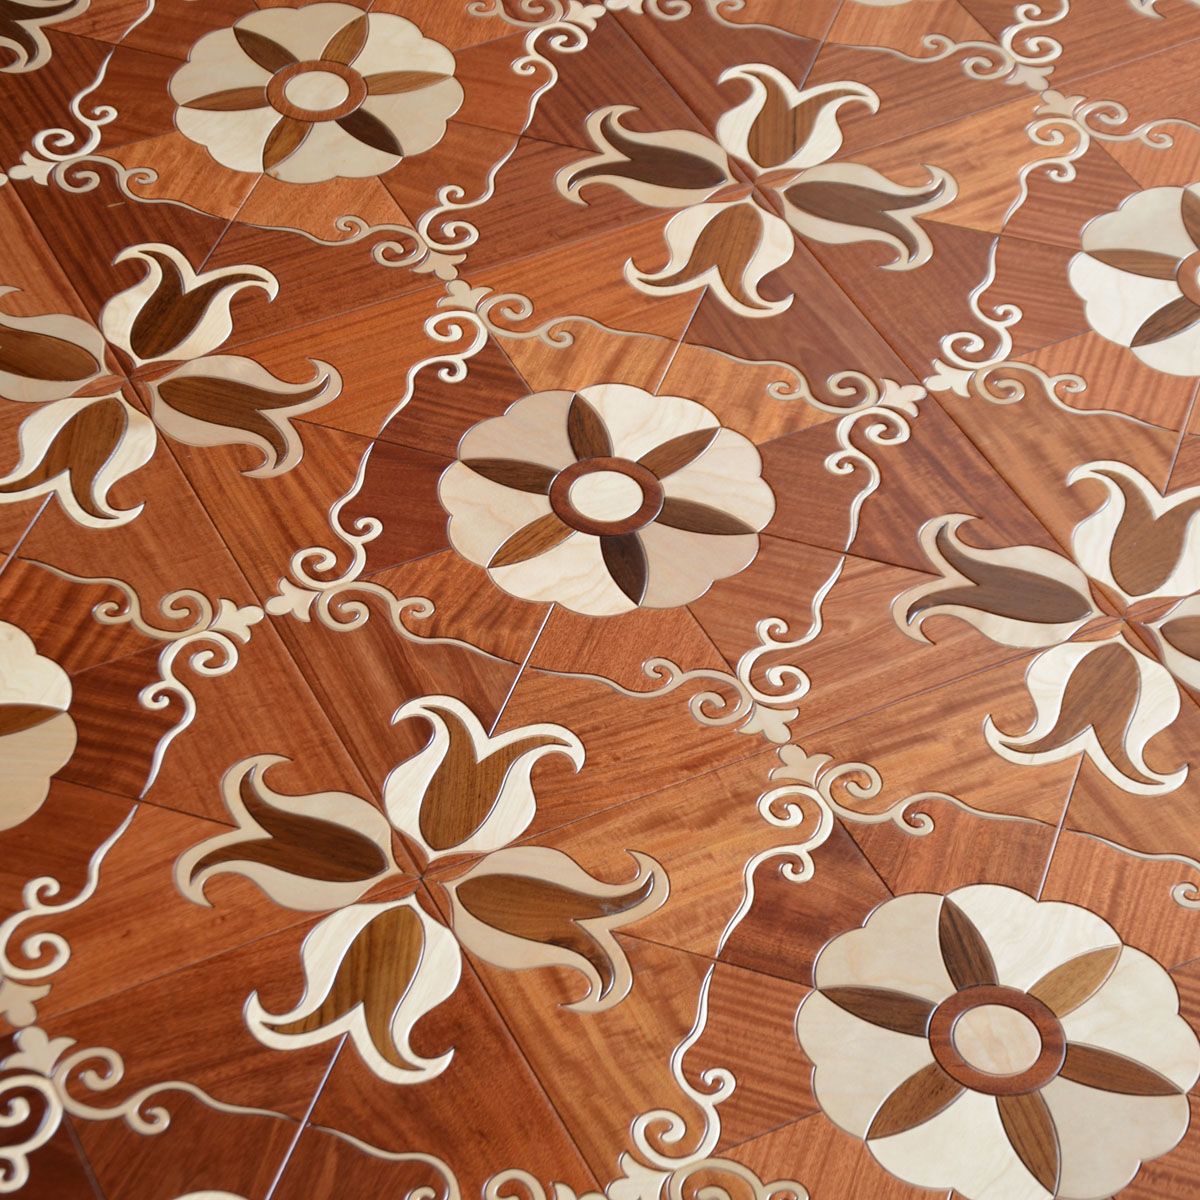 2021 Teak Laminate Flooring, Decorative Laminate Flooring